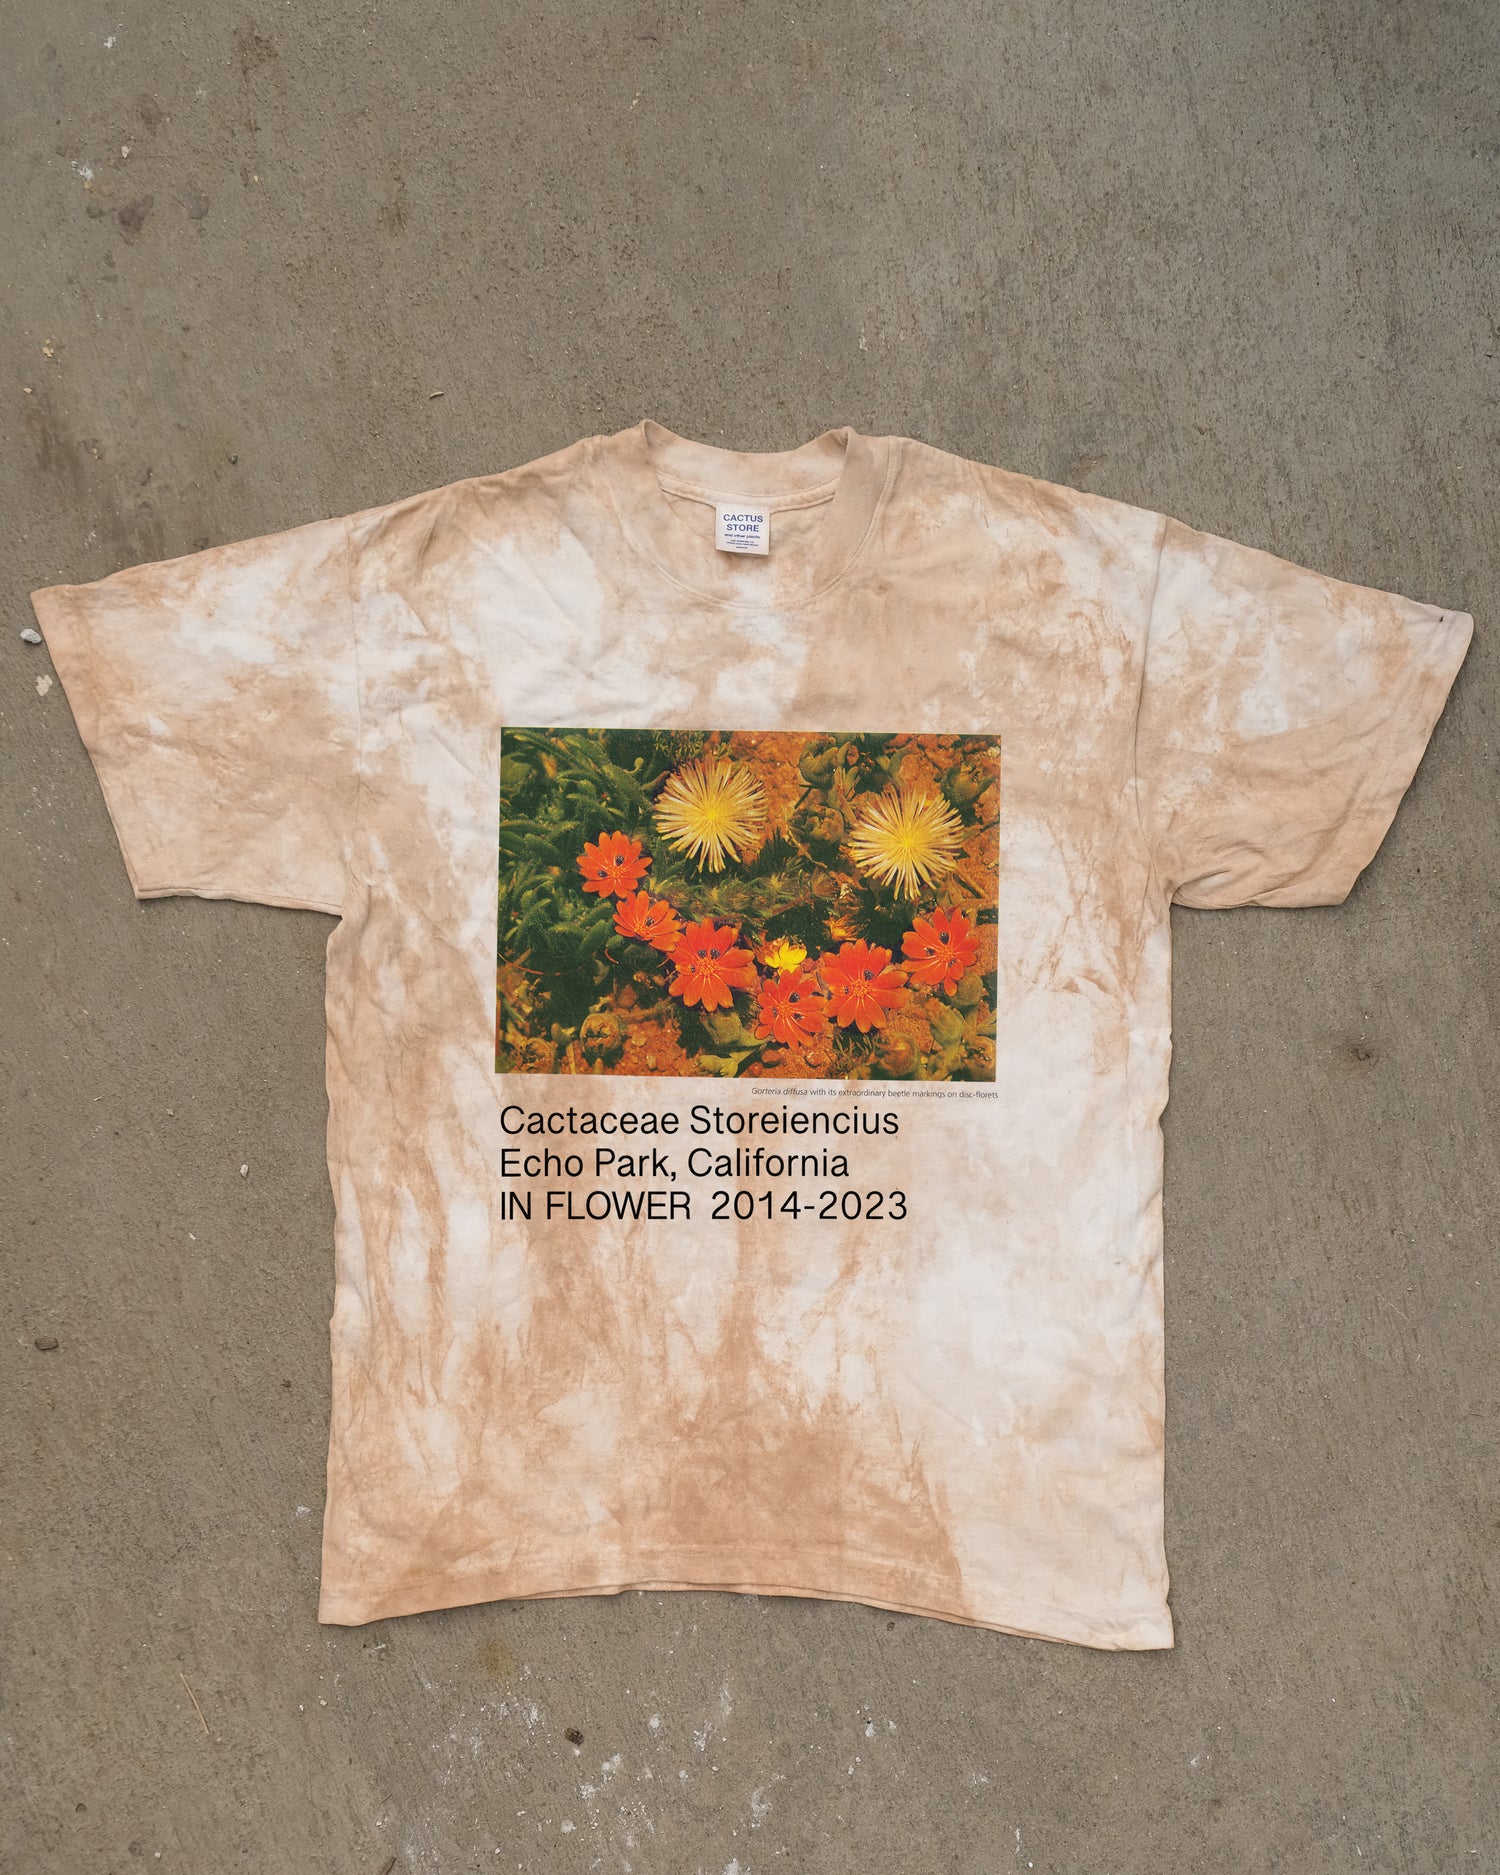 IN FLOWER 2014-2023 – Cactaceae Storeiencius